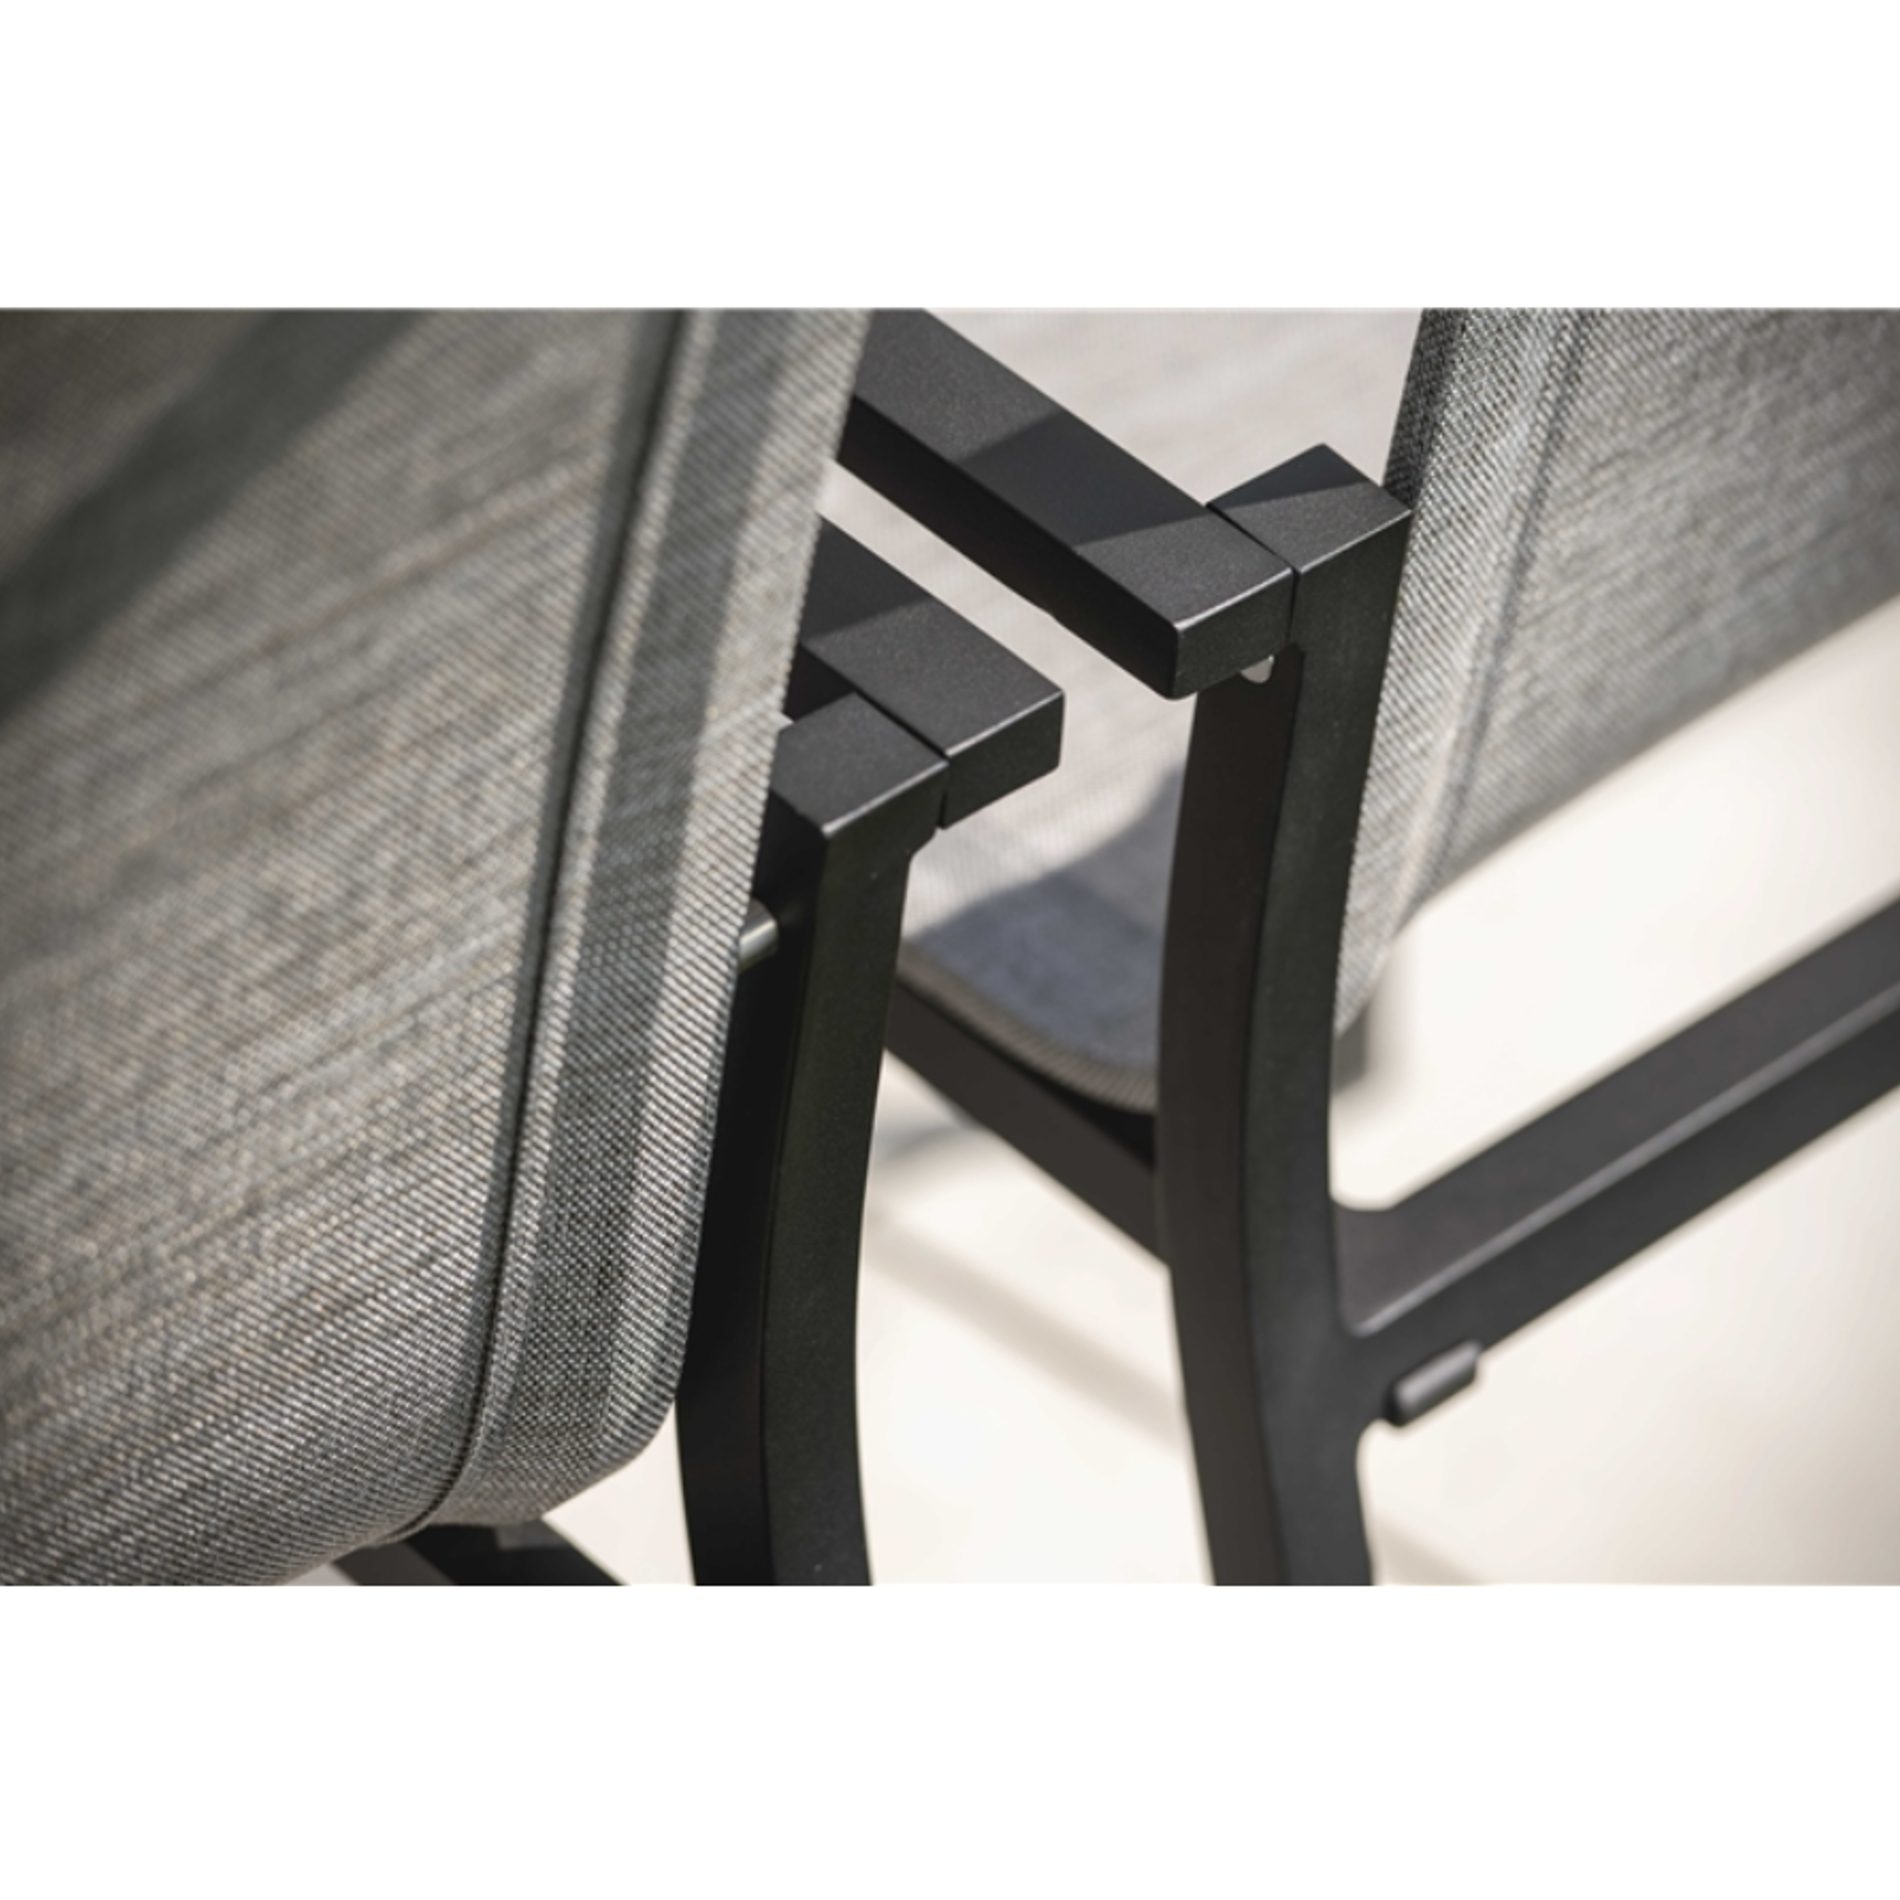 Stern "Evoee" Stapelsessel, Aluminium schwarz matt, Textilen Leinen grau